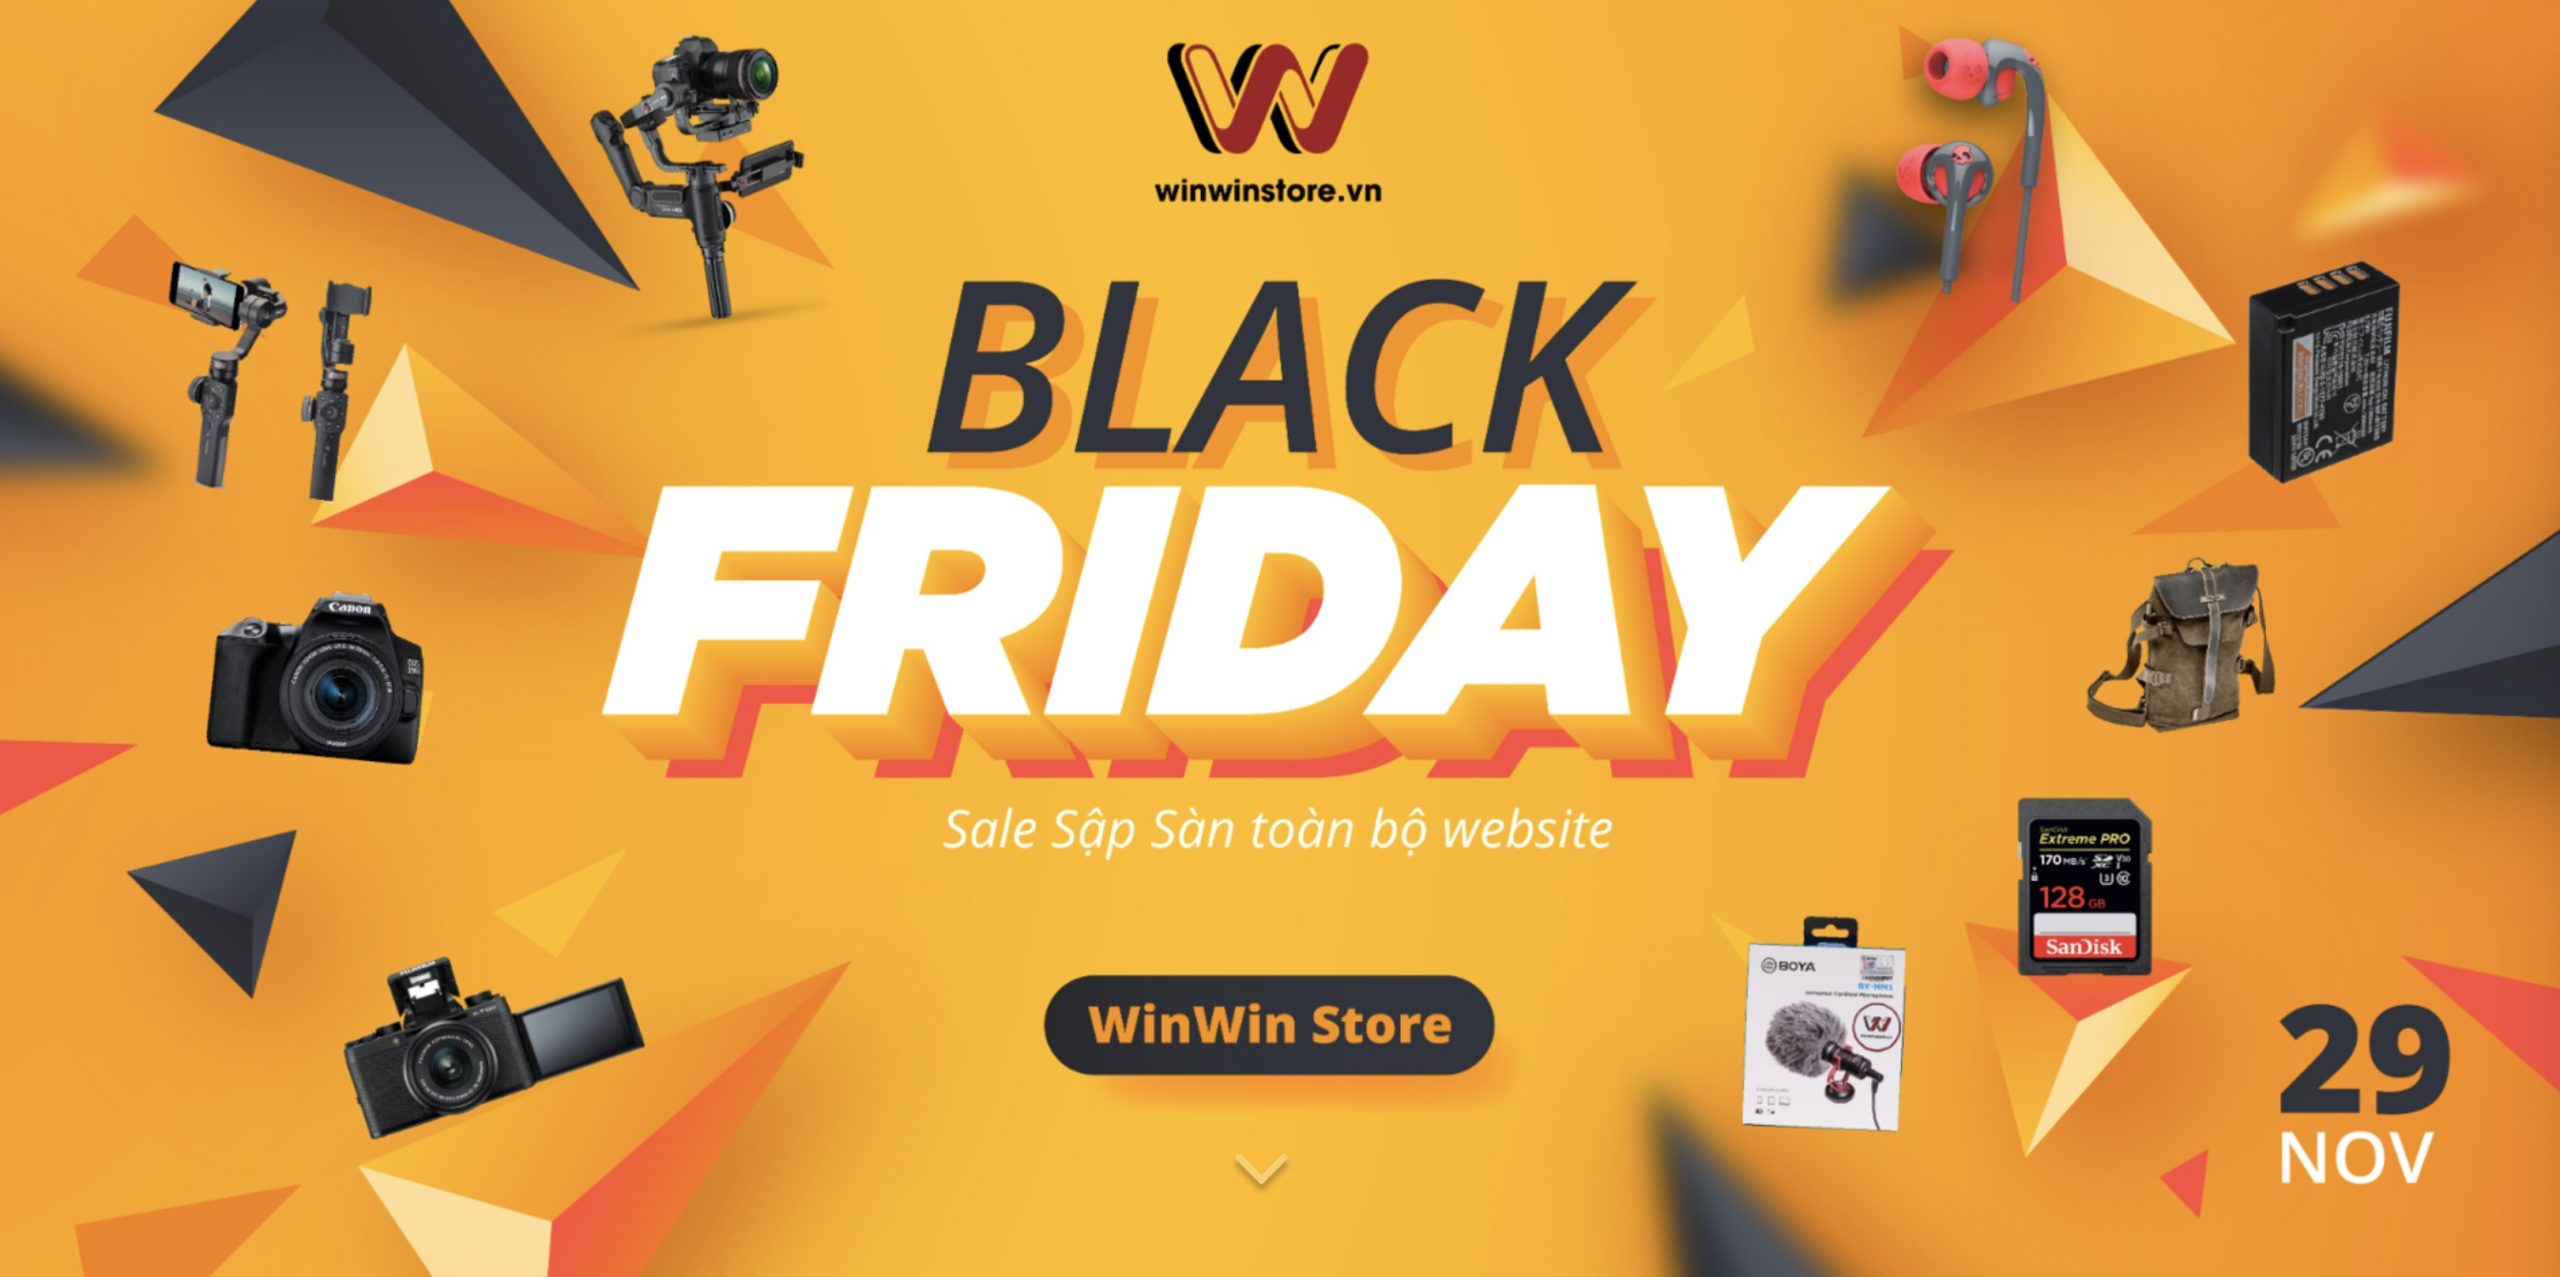 Sale sập sàn toàn bộ sản phẩm trên website WinWinStore.vn – Duy nhất trong ngày 29/11